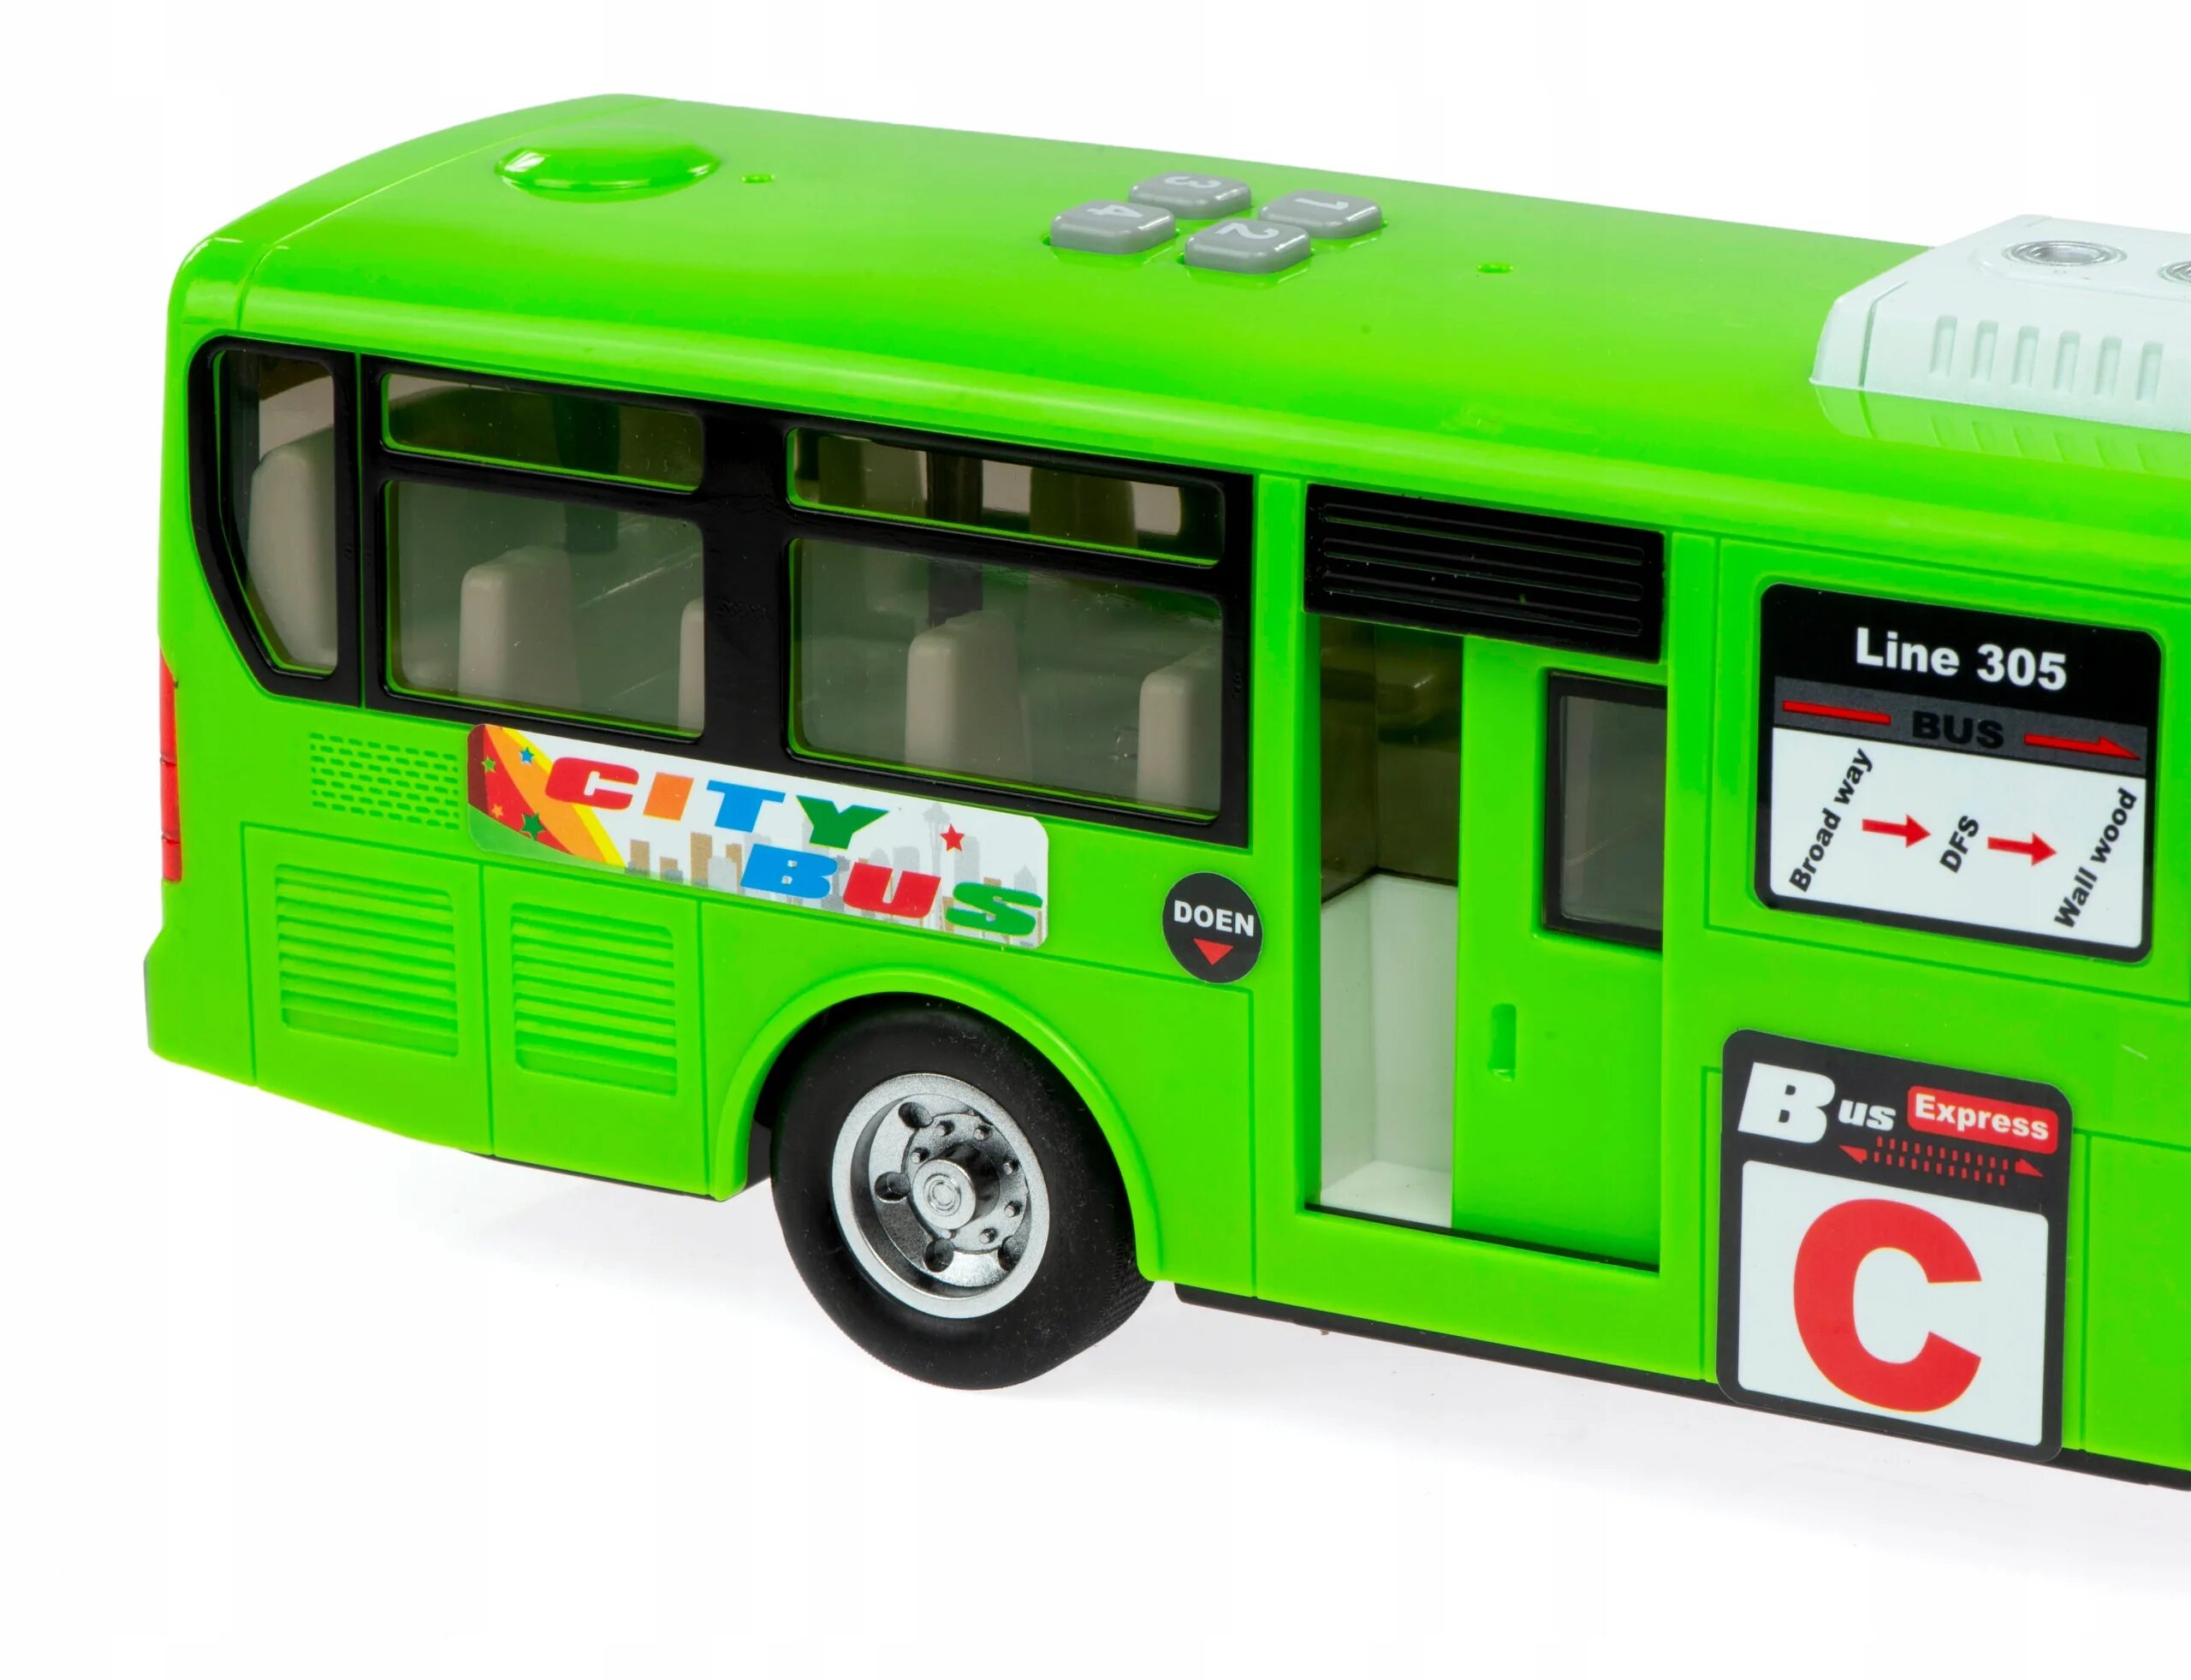 Bus toys. Игрушка автобус ПАЗ Технопарк. Зеленый автобус игрушка. Красный автобус игрушка. Игрушка зелёный автобус Технопарк.